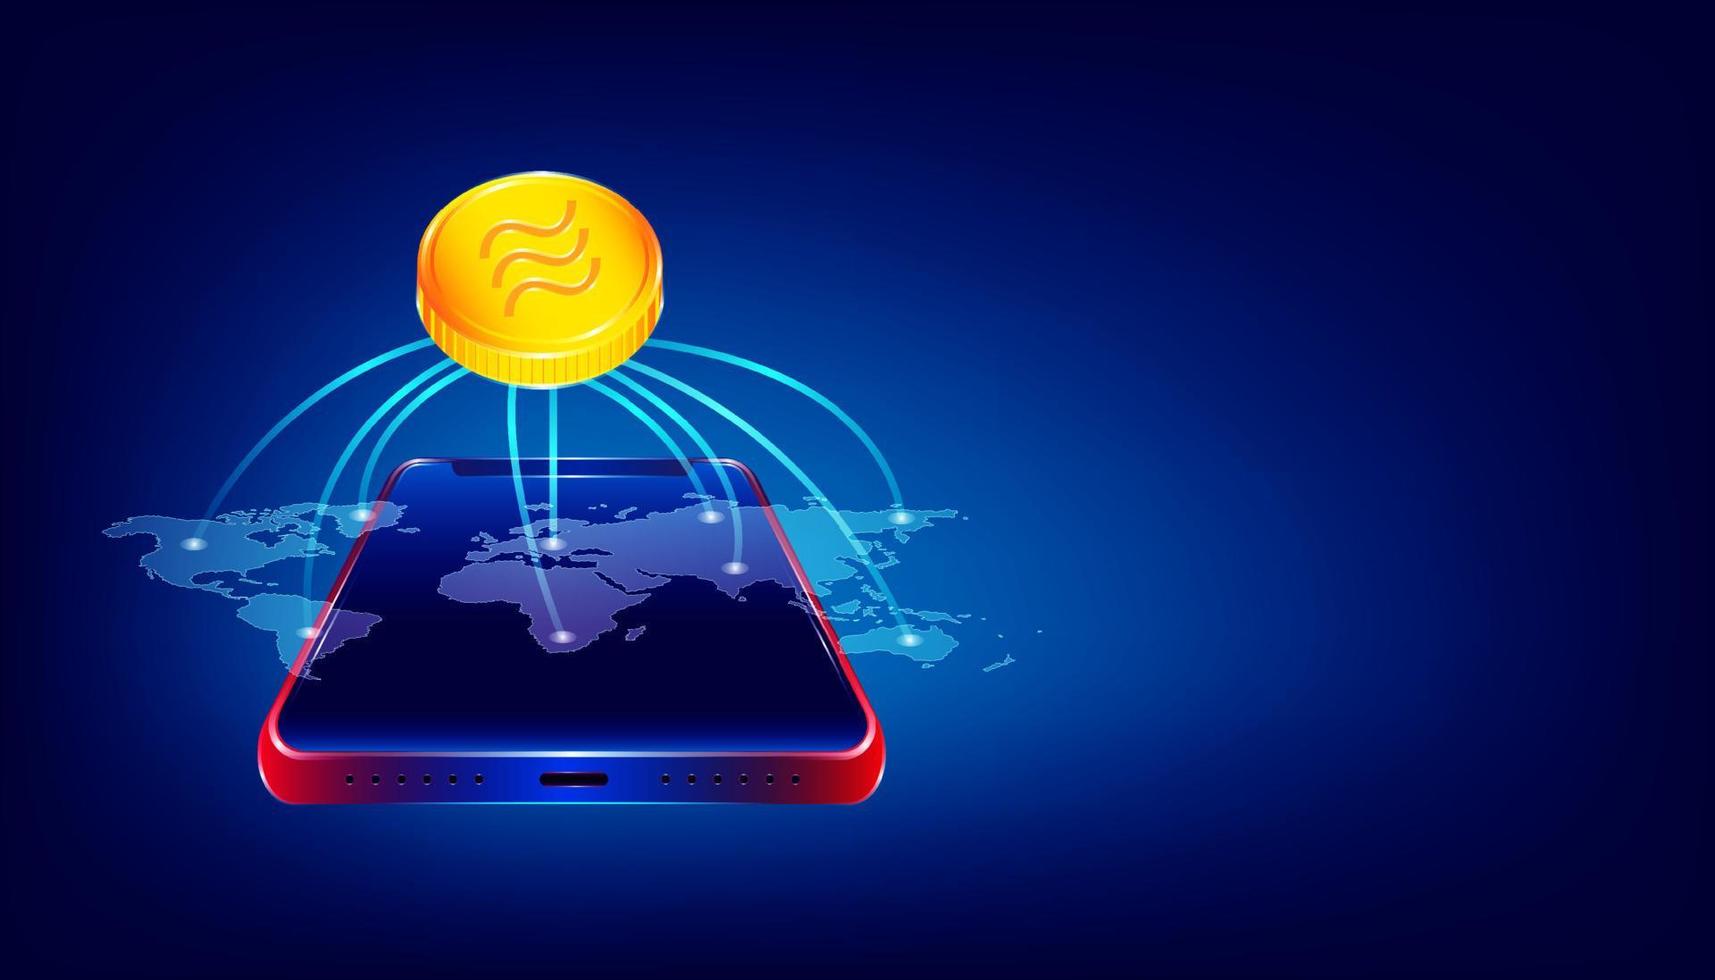 Luxus-Gold-Libra-Kryptowährungs-Münzensymbol. Menschen nutzen die große virtuelle Blockchain auf der ganzen Welt über ein schönes Smartphone. bunter hintergrundstil. Vektorillustration eps10 vektor